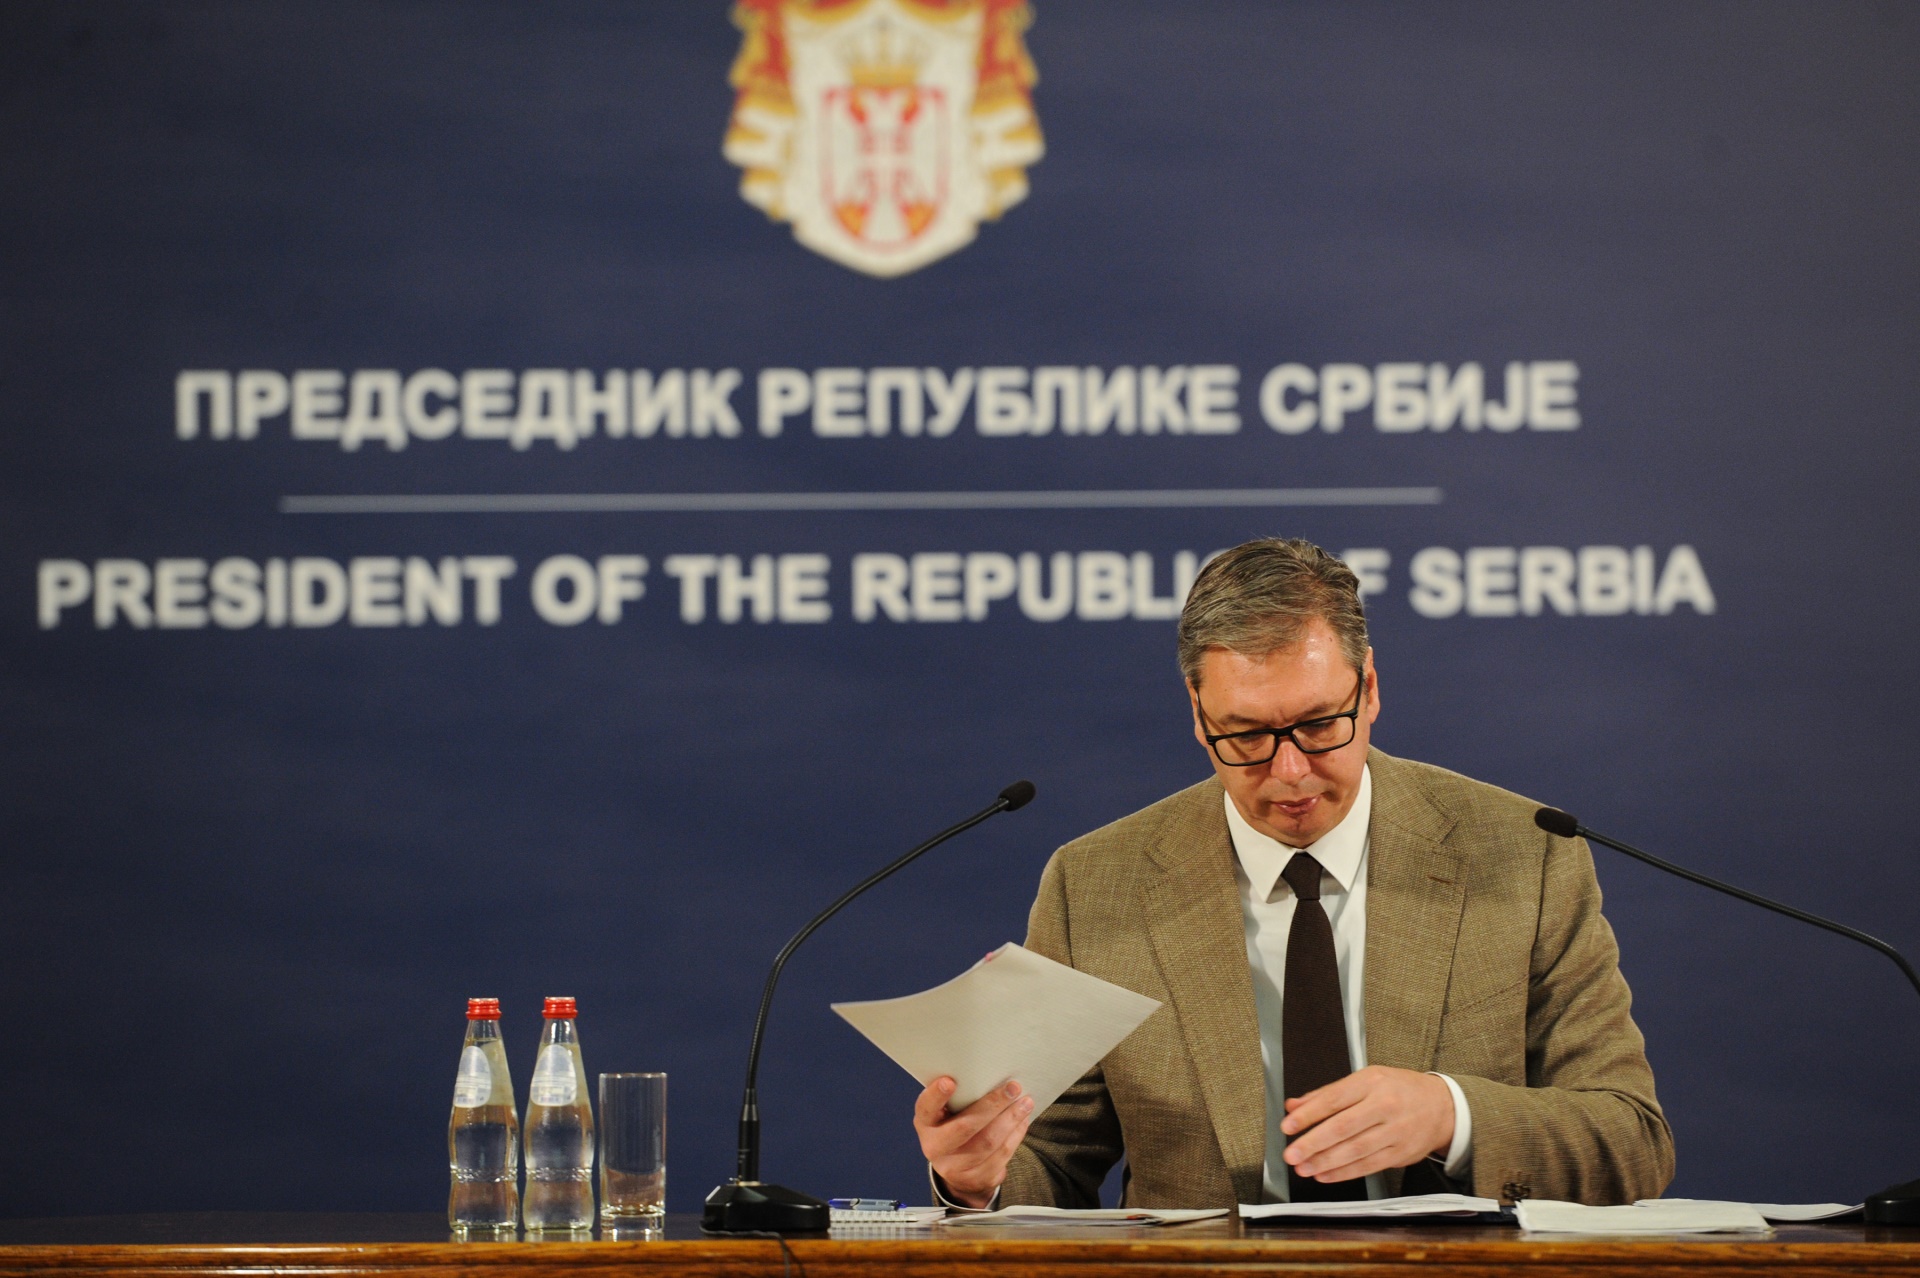 Председник Републике Србије Александар Вучић оценио је да је ситуација за наш народ на Косову и Метохији веома компликована и сложена.